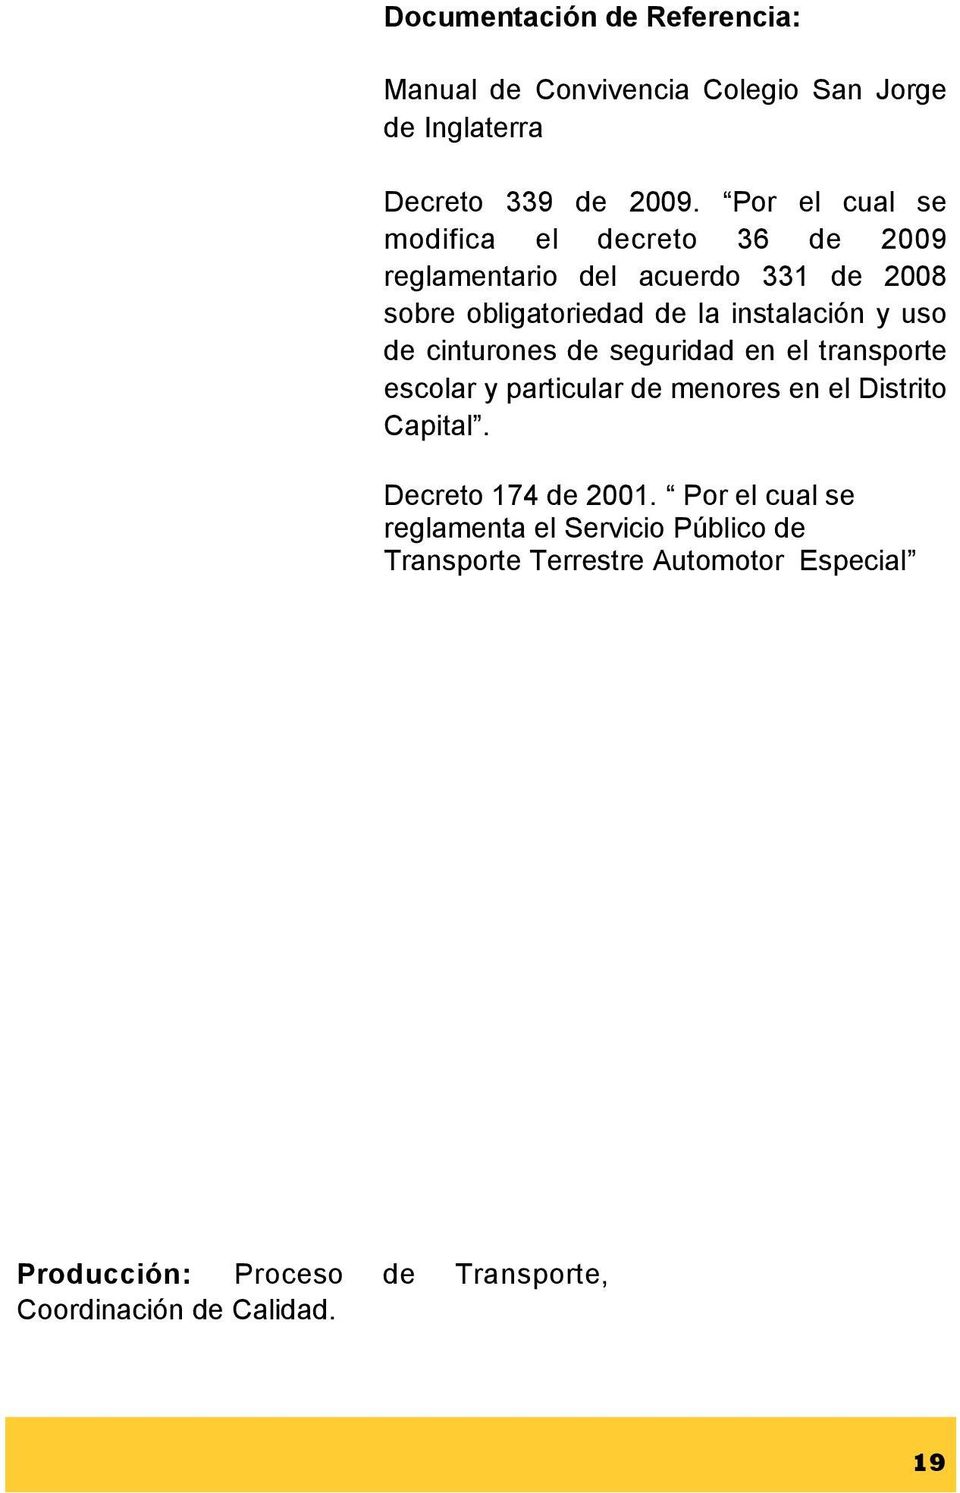 uso de cinturones de seguridad en el transporte escolar y particular de menores en el Distrito Capital. Decreto 174 de 2001.